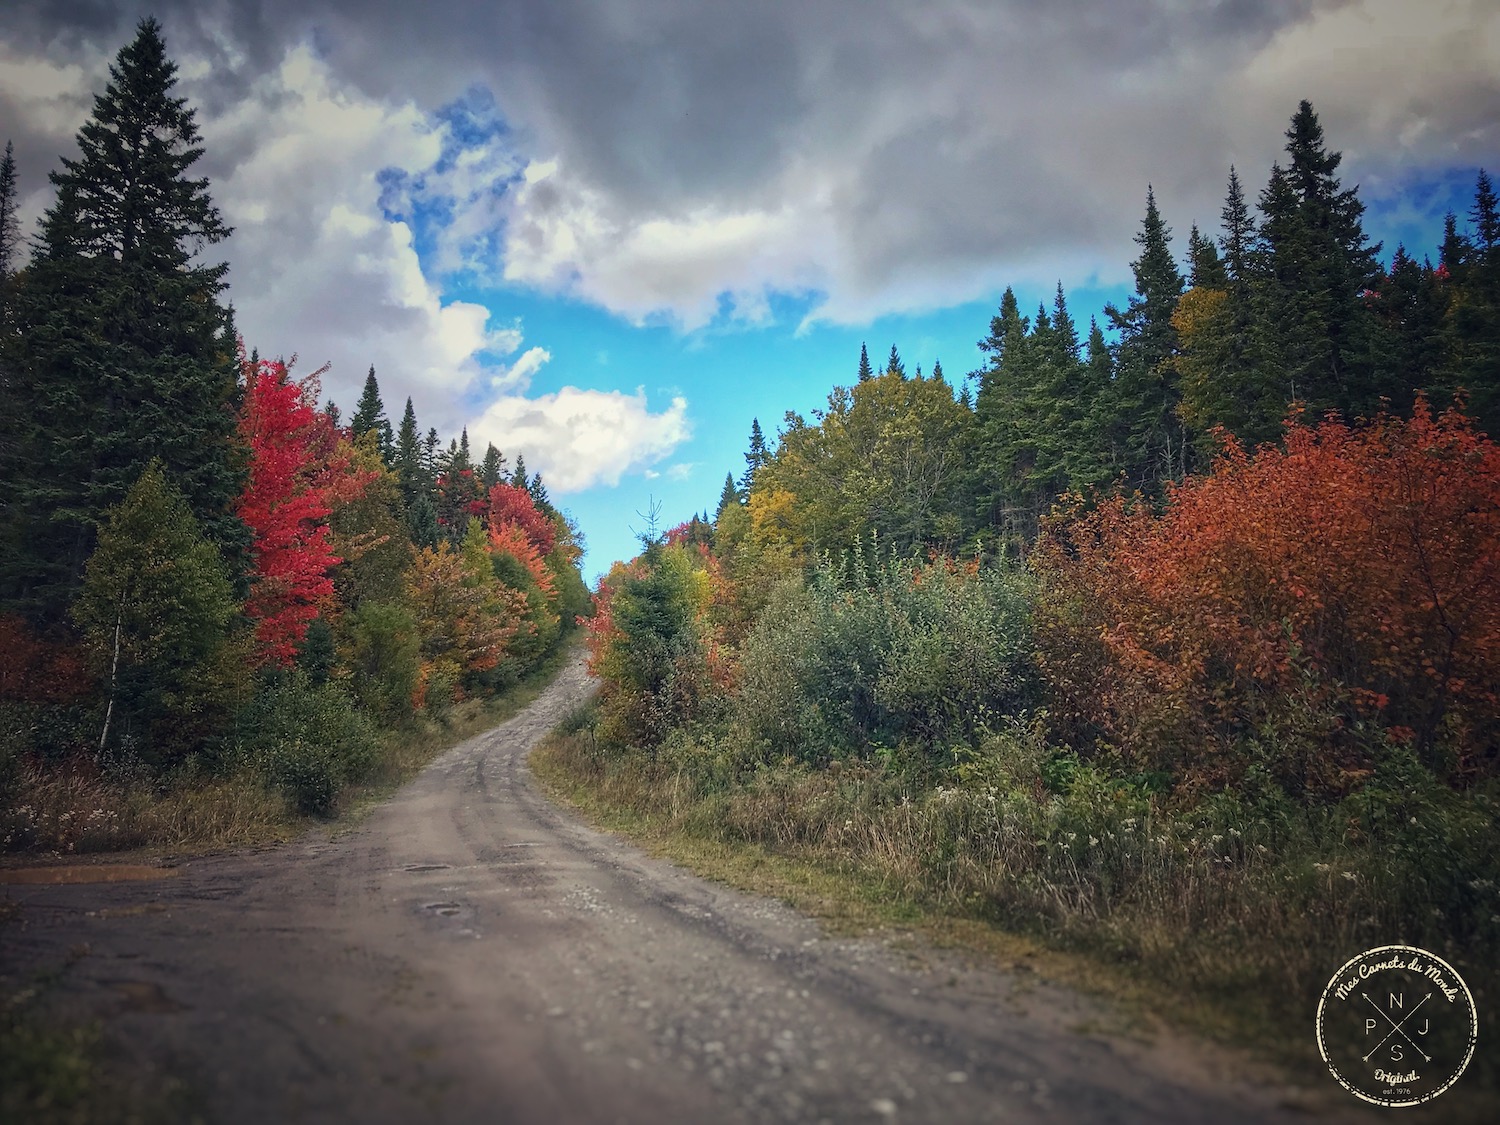 Couleurs de l'automne au Canada : sur la route dans la forêt